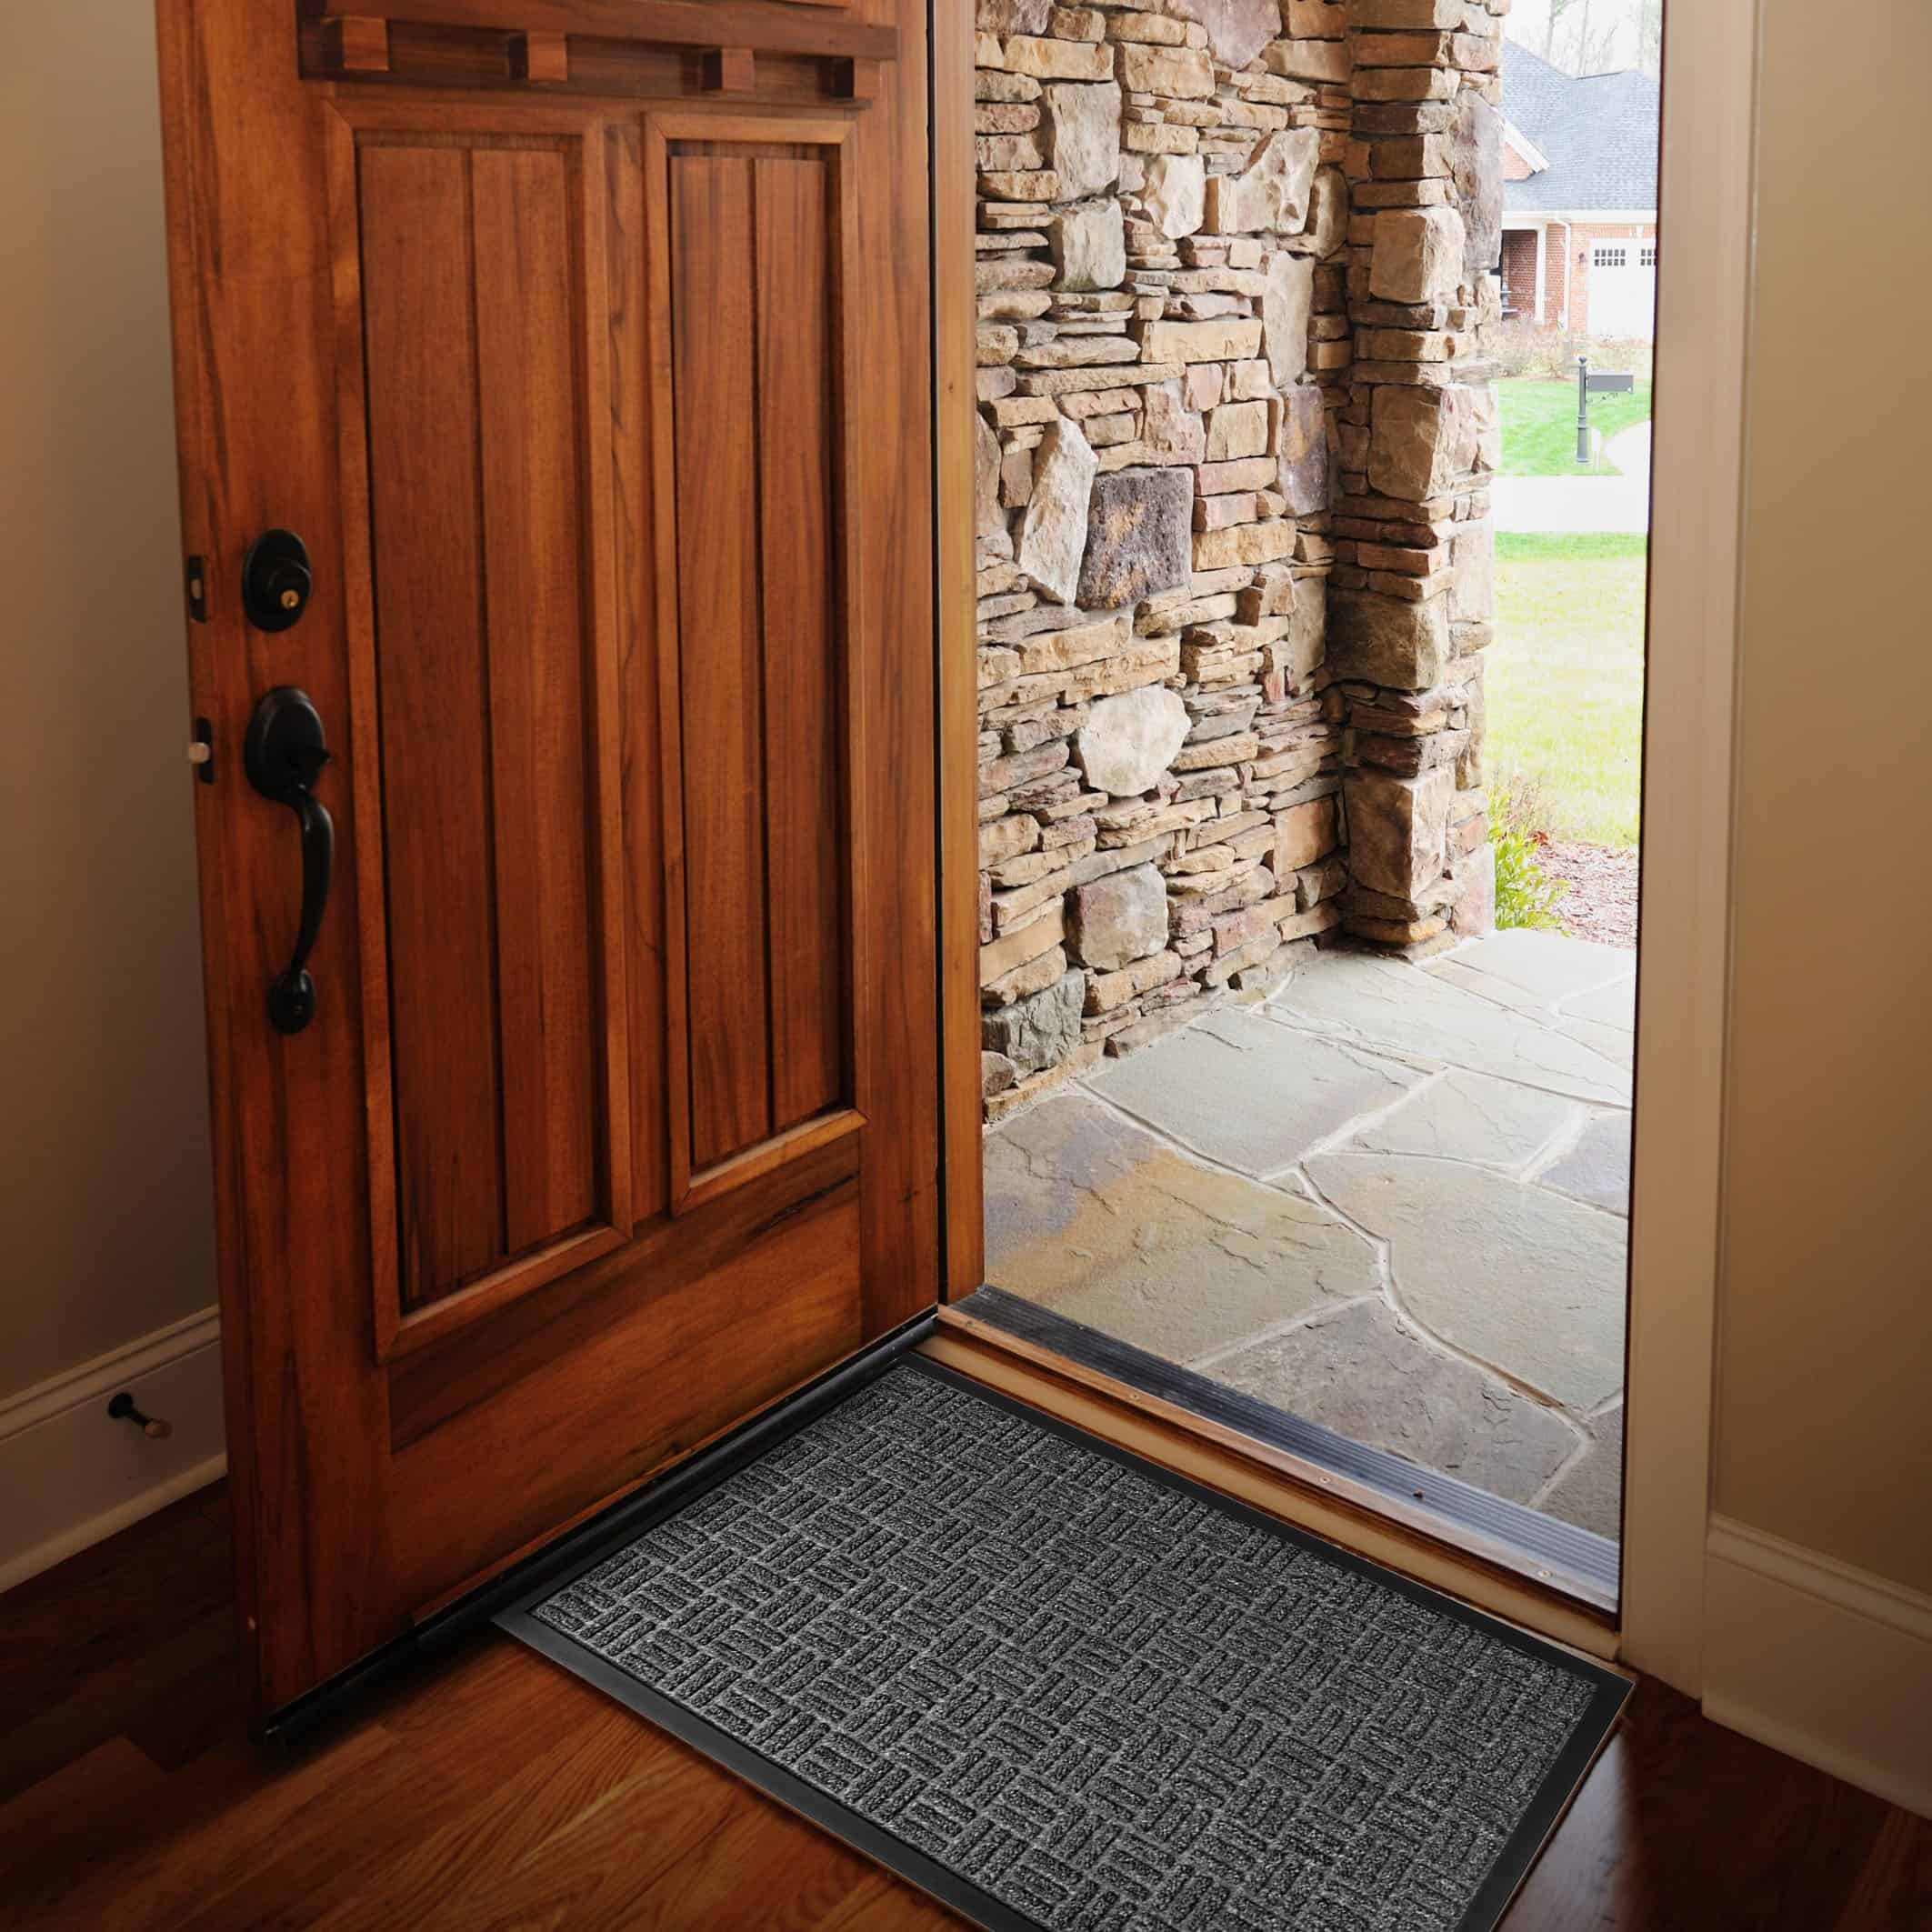 Evideco Welcome Half Round Front Doormat Outdoor 30 x 18 Rubber Door Mat for Entry Way